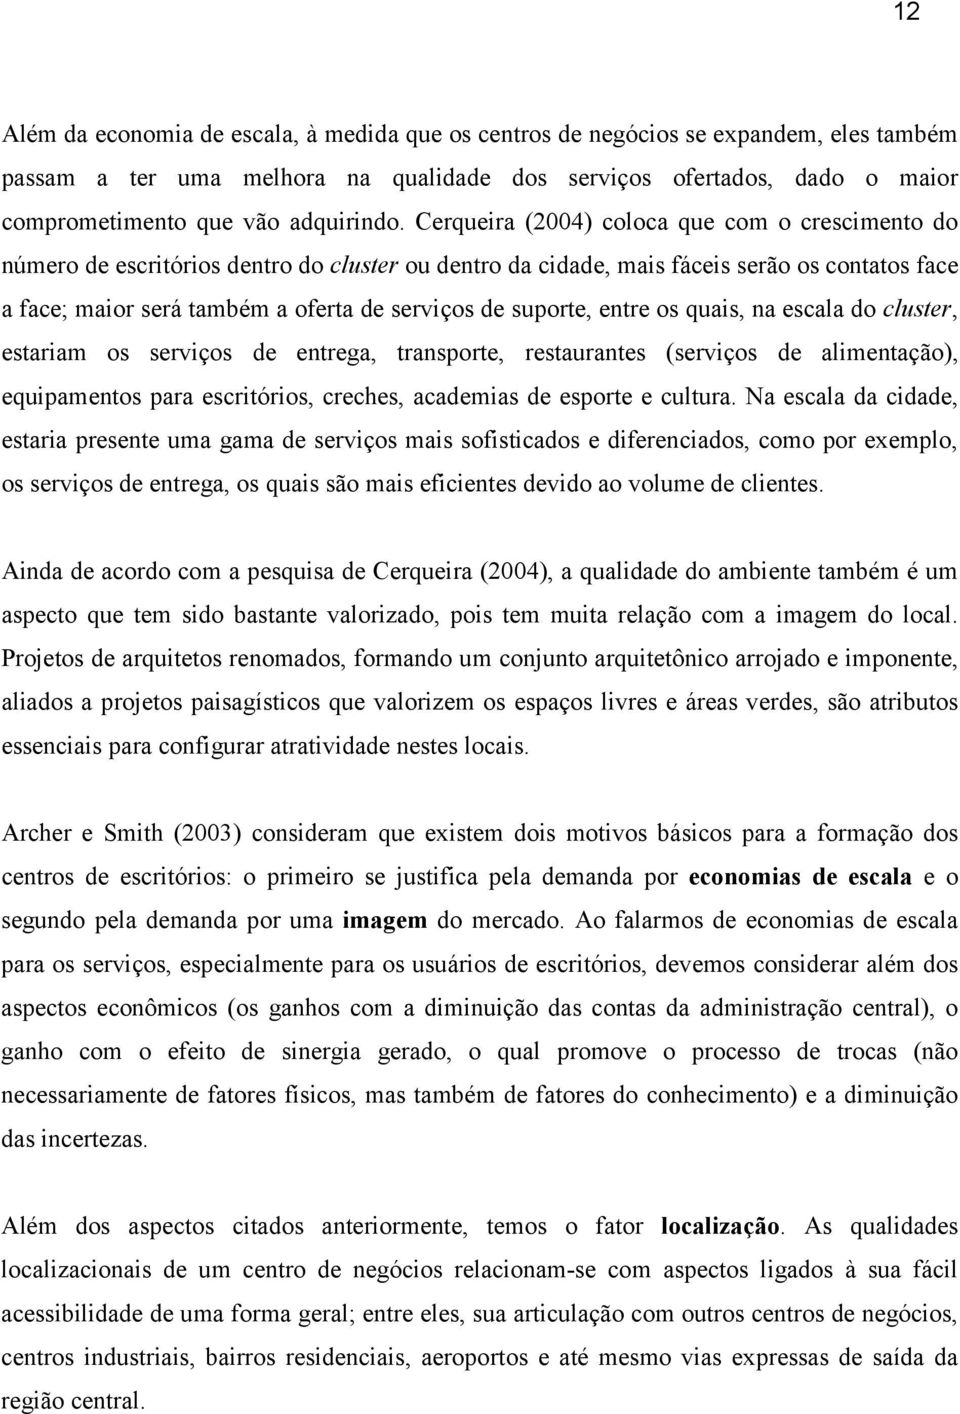 Cerqueira (2004) coloca que com o crescimento do número de escritórios dentro do cluster ou dentro da cidade, mais fáceis serão os contatos face a face; maior será também a oferta de serviços de